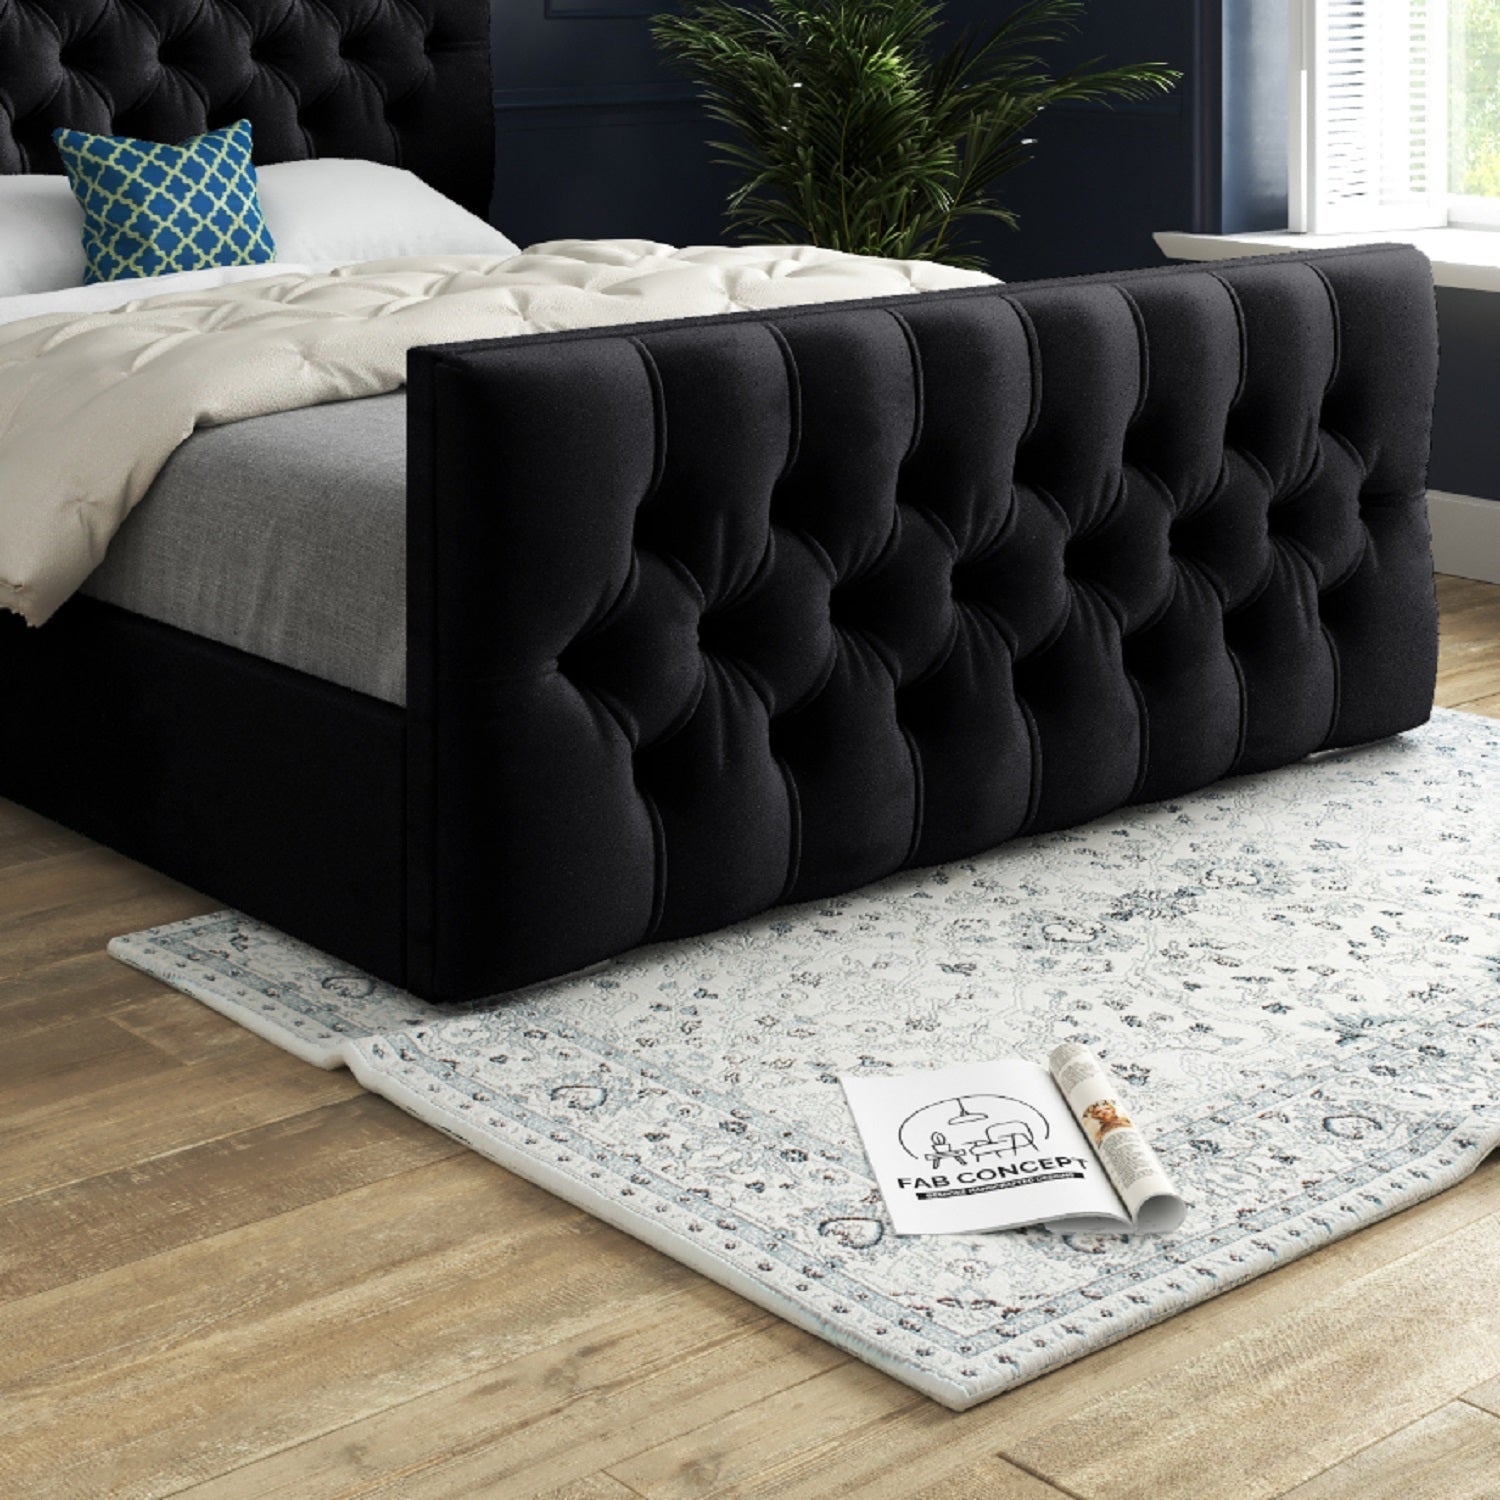 Novara Upholstered Soft Velvet Bed Frame